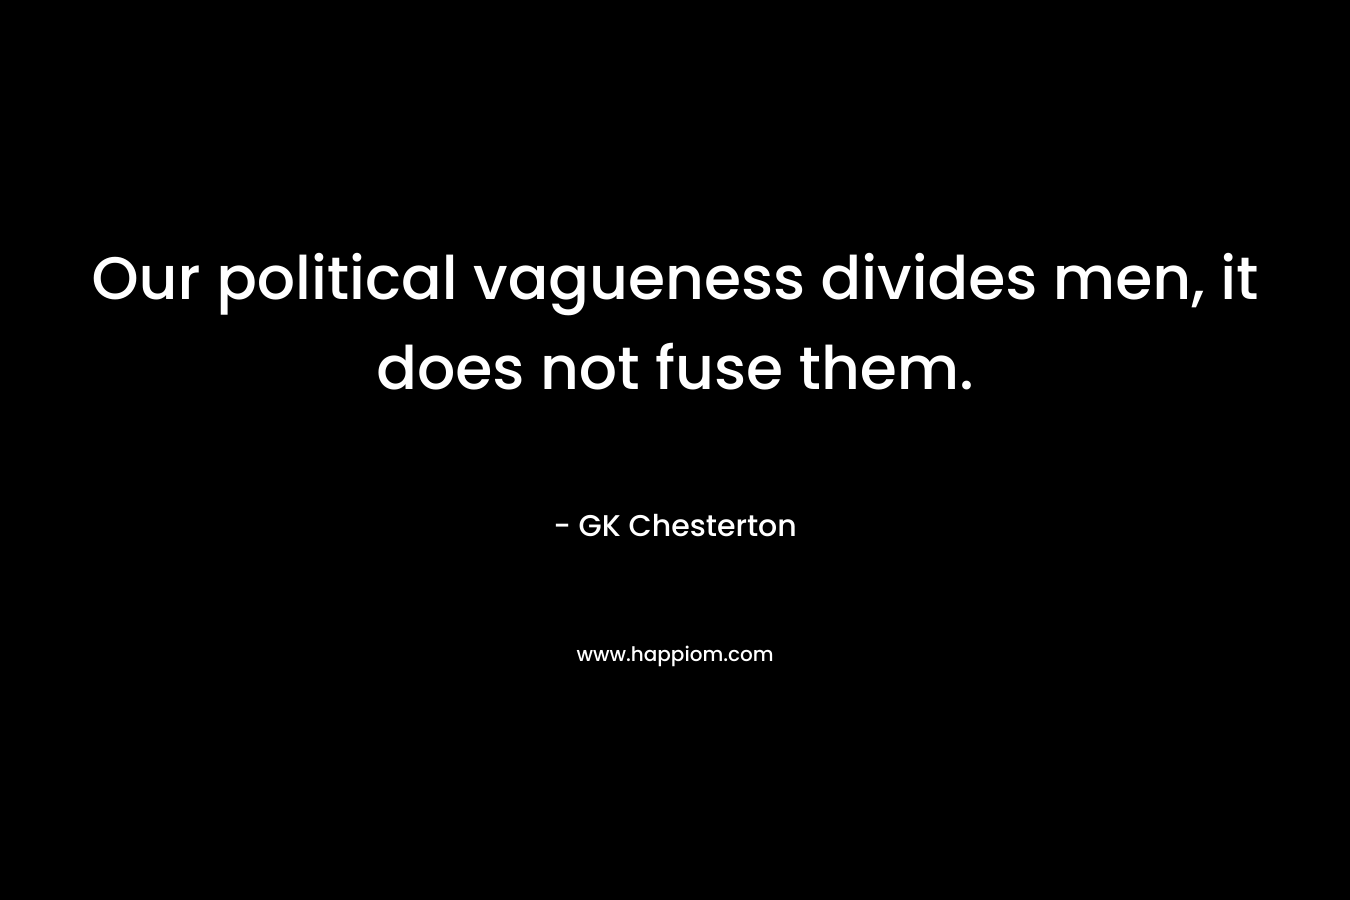 Our political vagueness divides men, it does not fuse them.